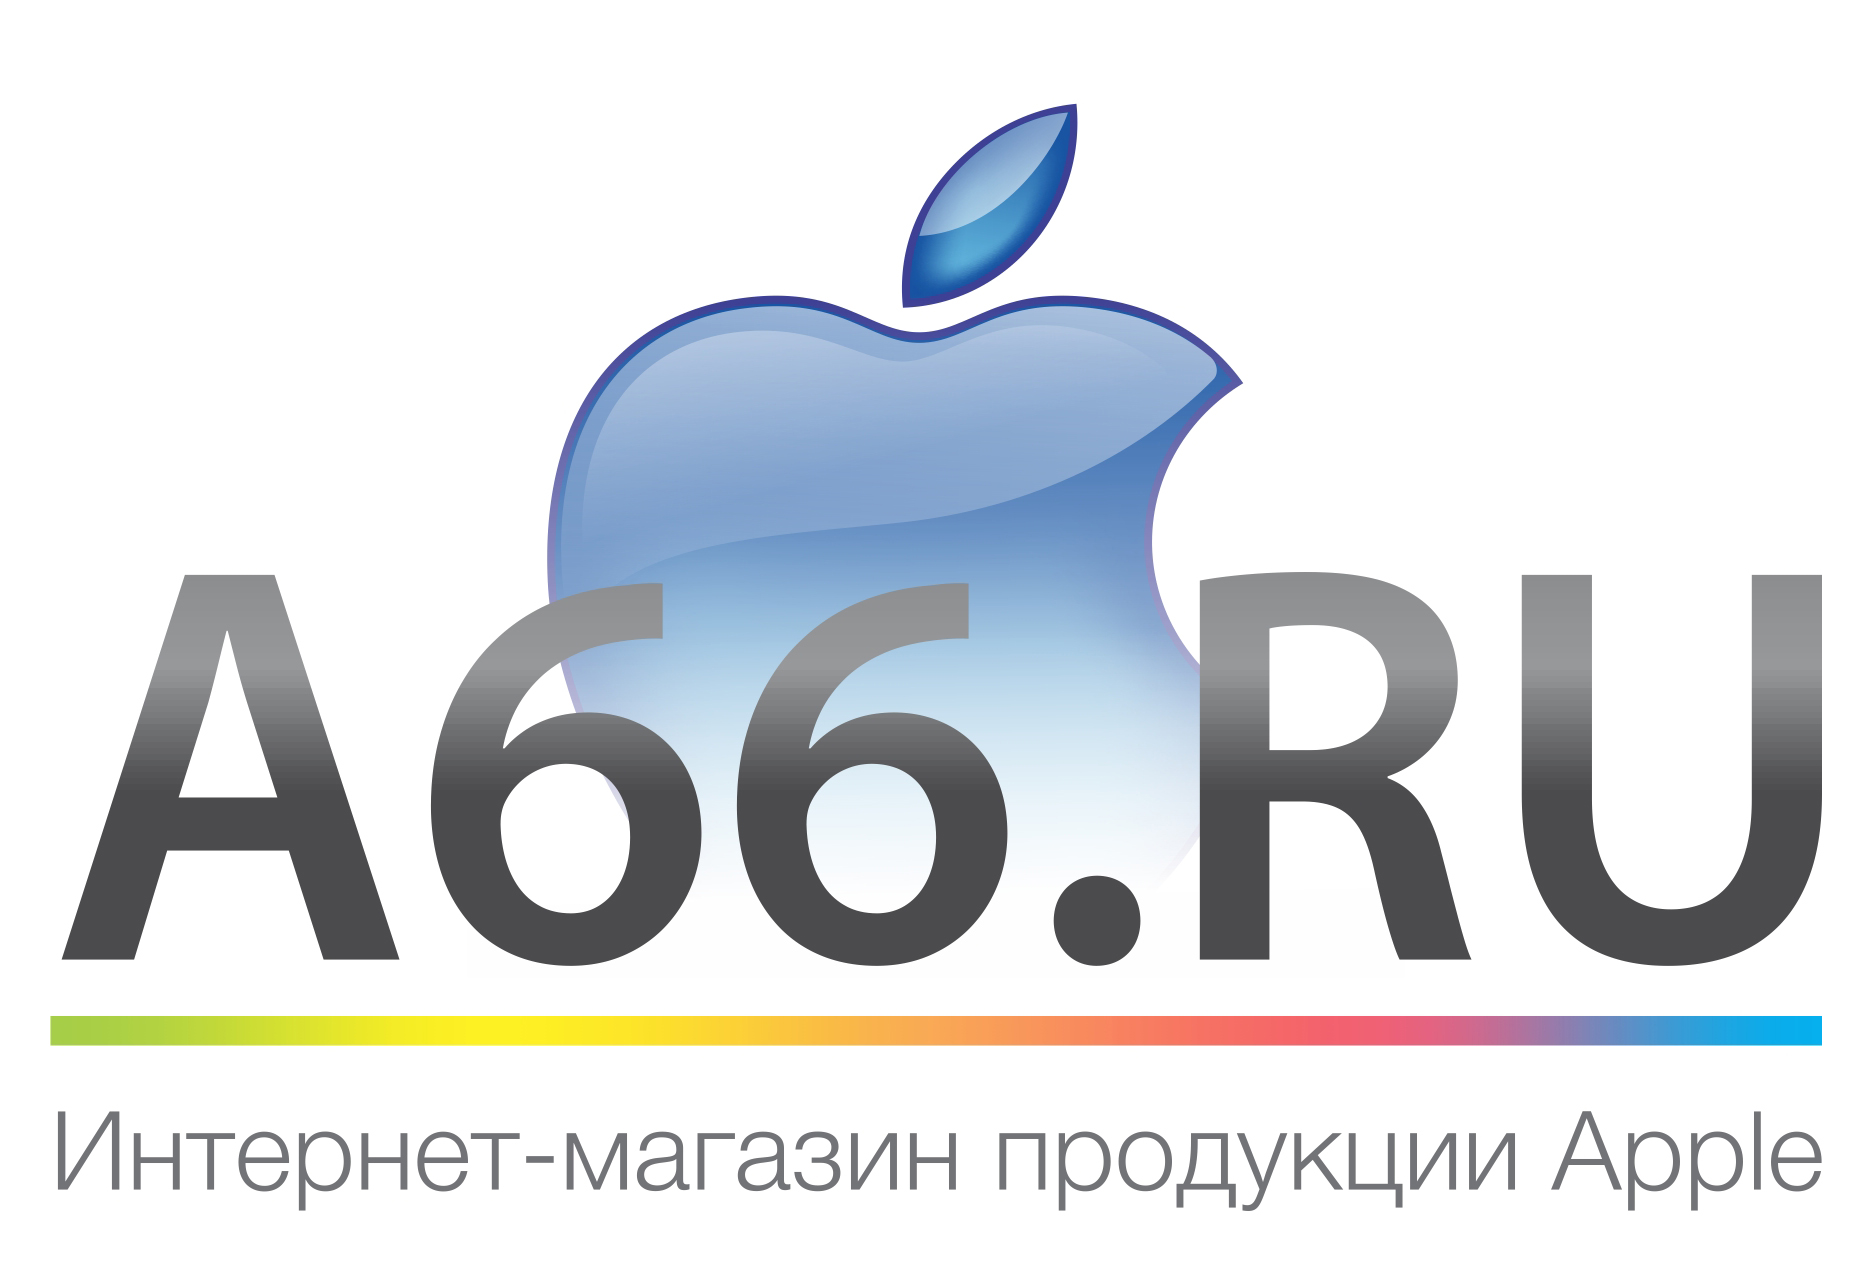 A66.ru